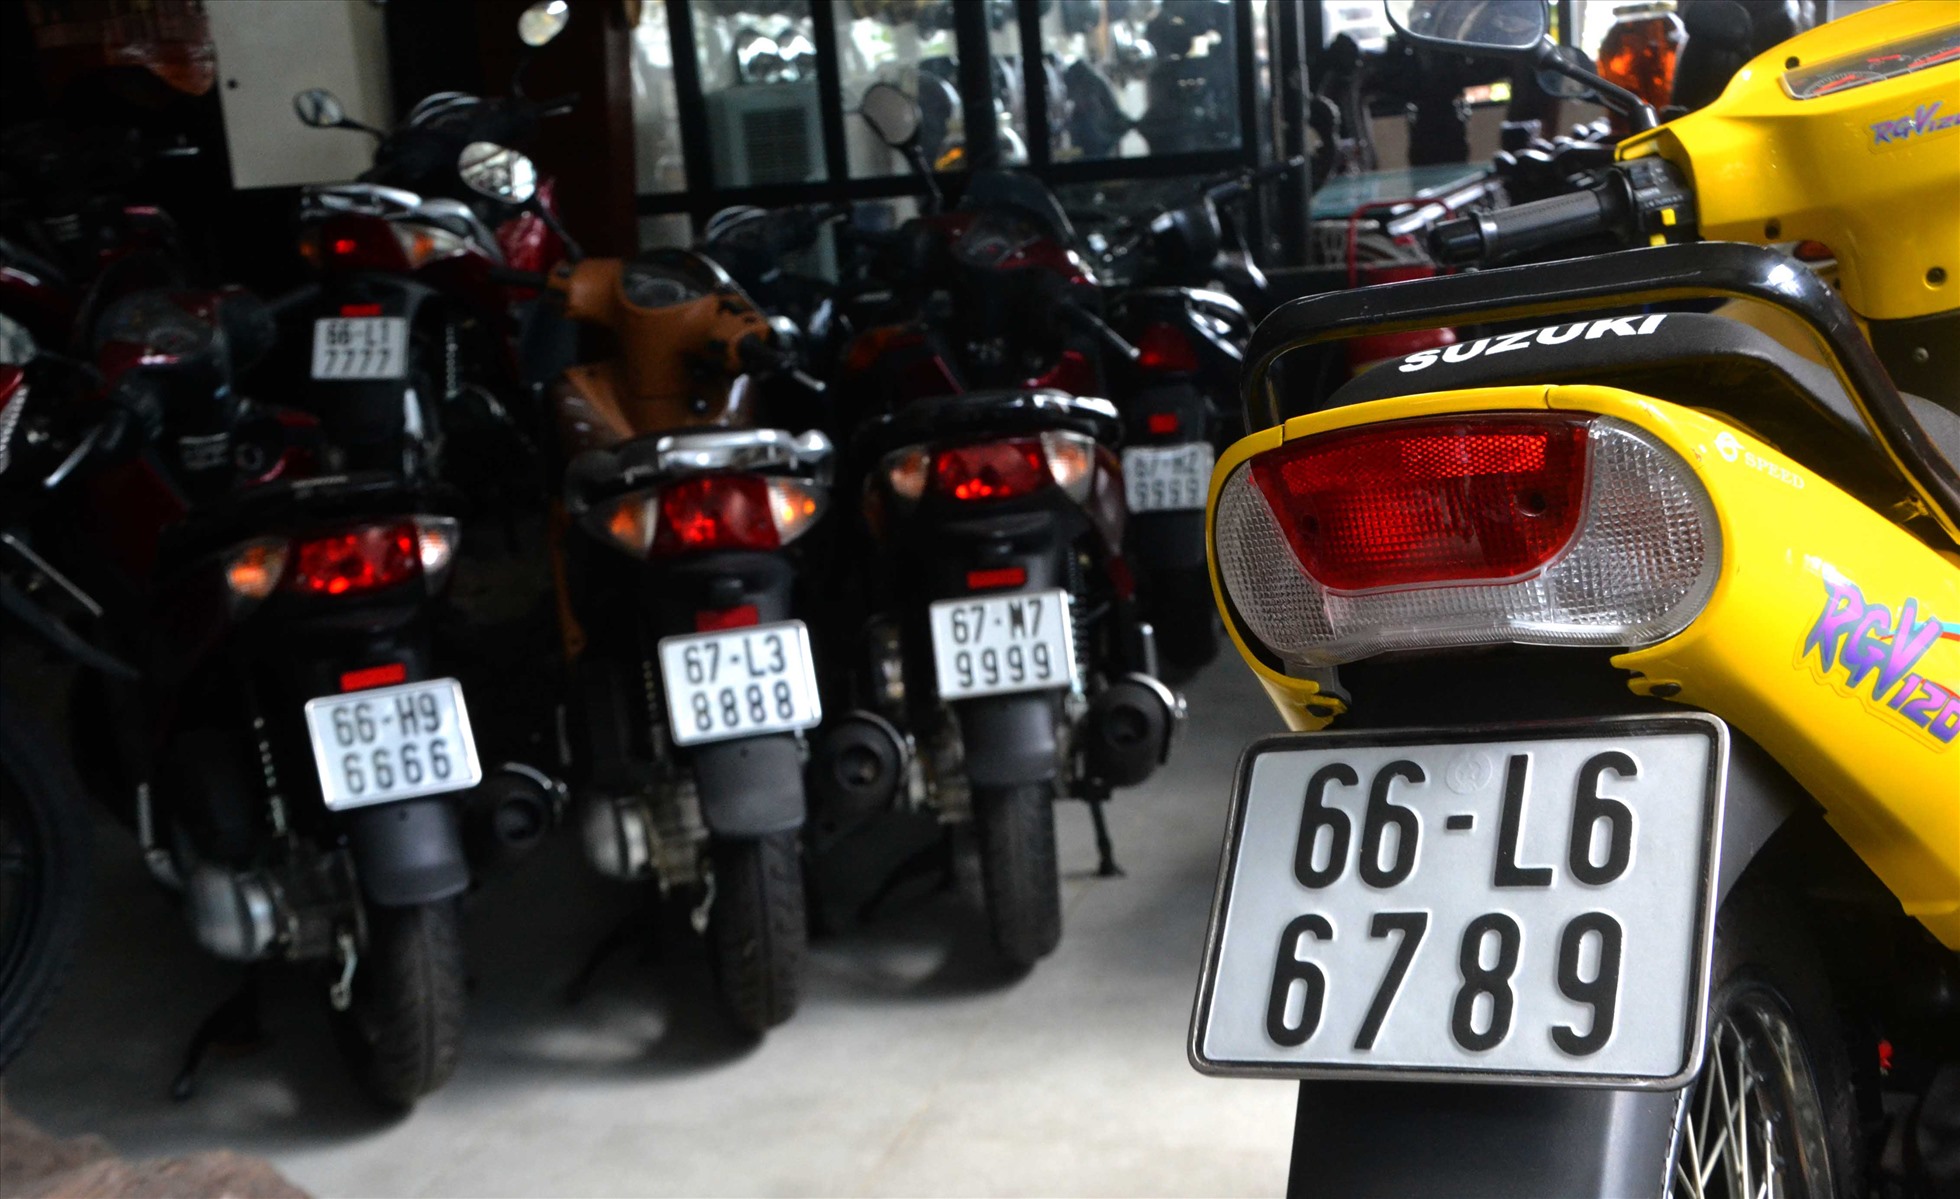 Ông Nguyễn Văn Nghỉ ở thị trấn Mỹ Luông (Chợ Mới - An Giang) sở hữu hơn 600 xe môtô có biển số thuộc dạng độc lạ. Ảnh: Lục Tùng